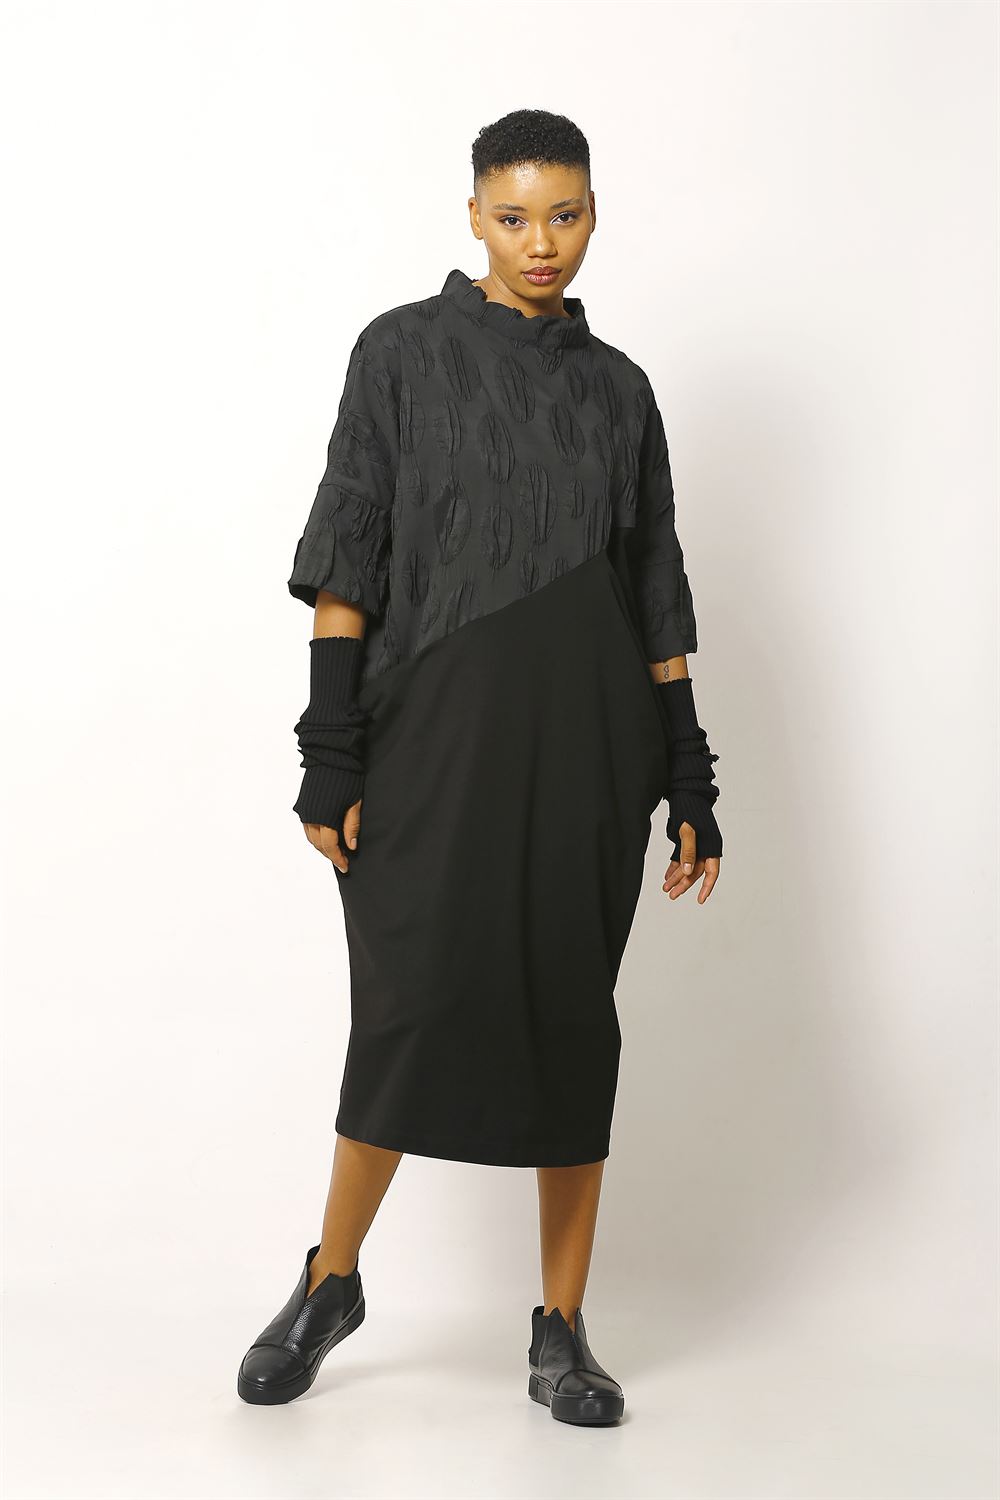 Jakarlı Düz Örme Kumaşlı Elbise - Siyah